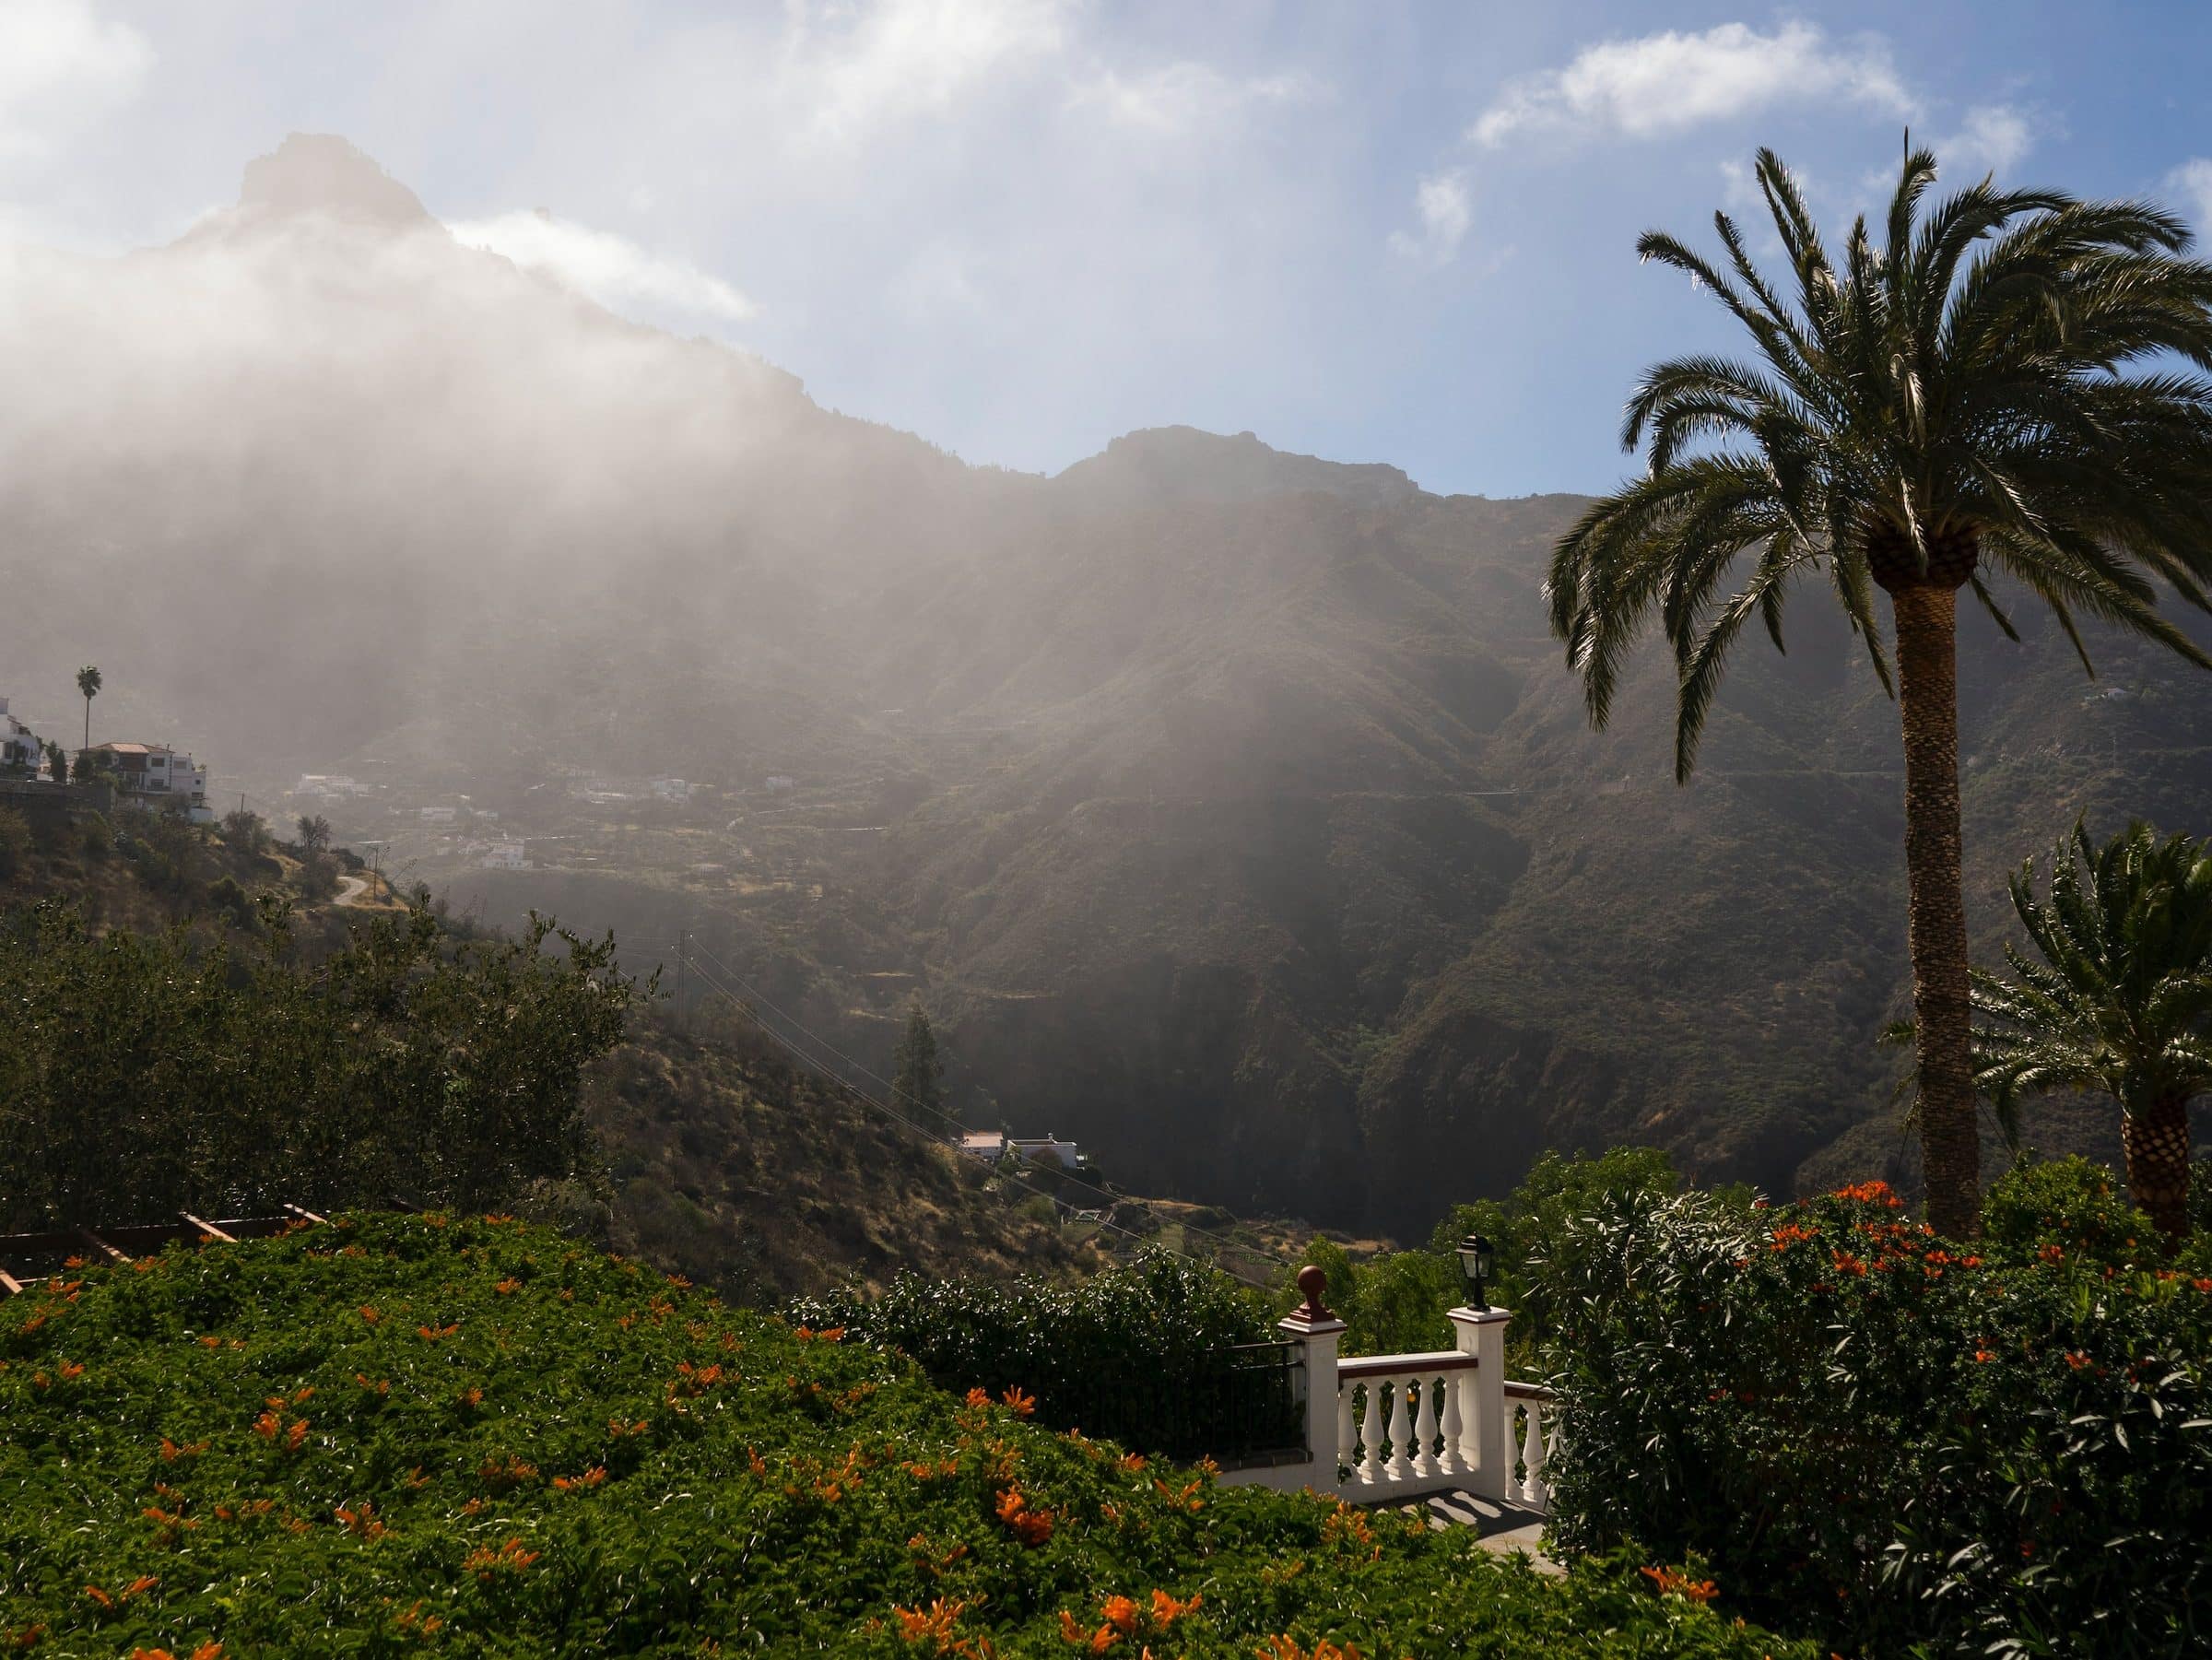 Reisebericht Gran Canaria Tipps Erfahrungen Alles in allem lohnt es sich, mehr als einen Tag auf Gran Canaria zu verbringen, um all diese Hotspots zu entdecken und die vielseitige Insel zu erkunden.